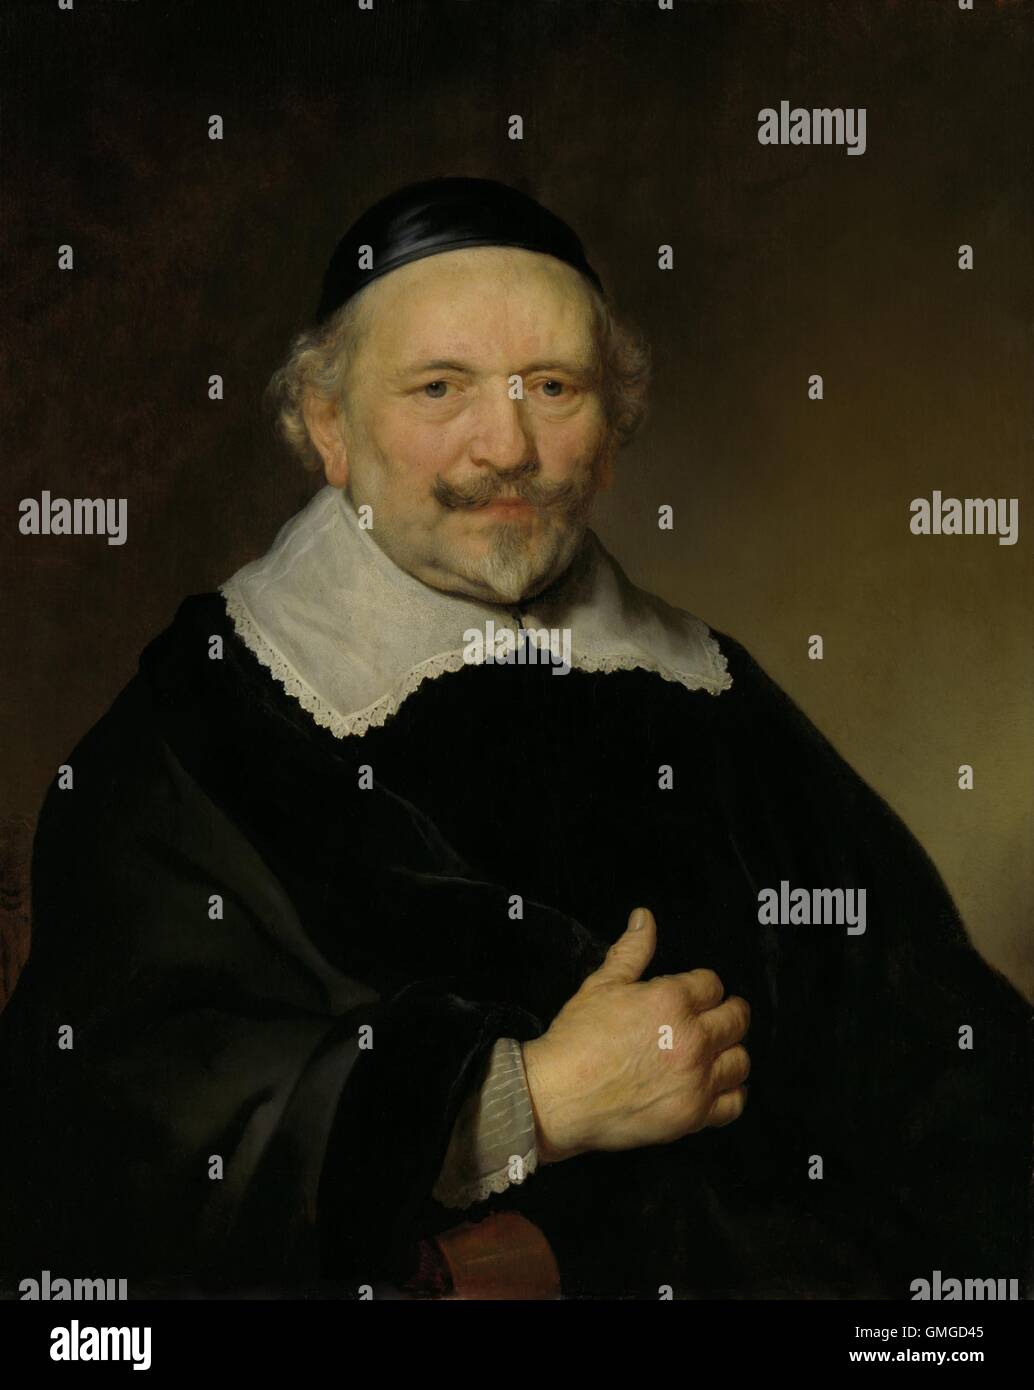 Retrato de un hombre, por Govert Flinck, c. 1643, la pintura holandesa, el aceite en el tablero. La niñera tiene dos posibles identificaciones: Augustijn Wtenbogaert o Johannes Wtenbogaert, Recaudador de Impuestos de Amsterdam (BSLOC 2016 3 88) Foto de stock